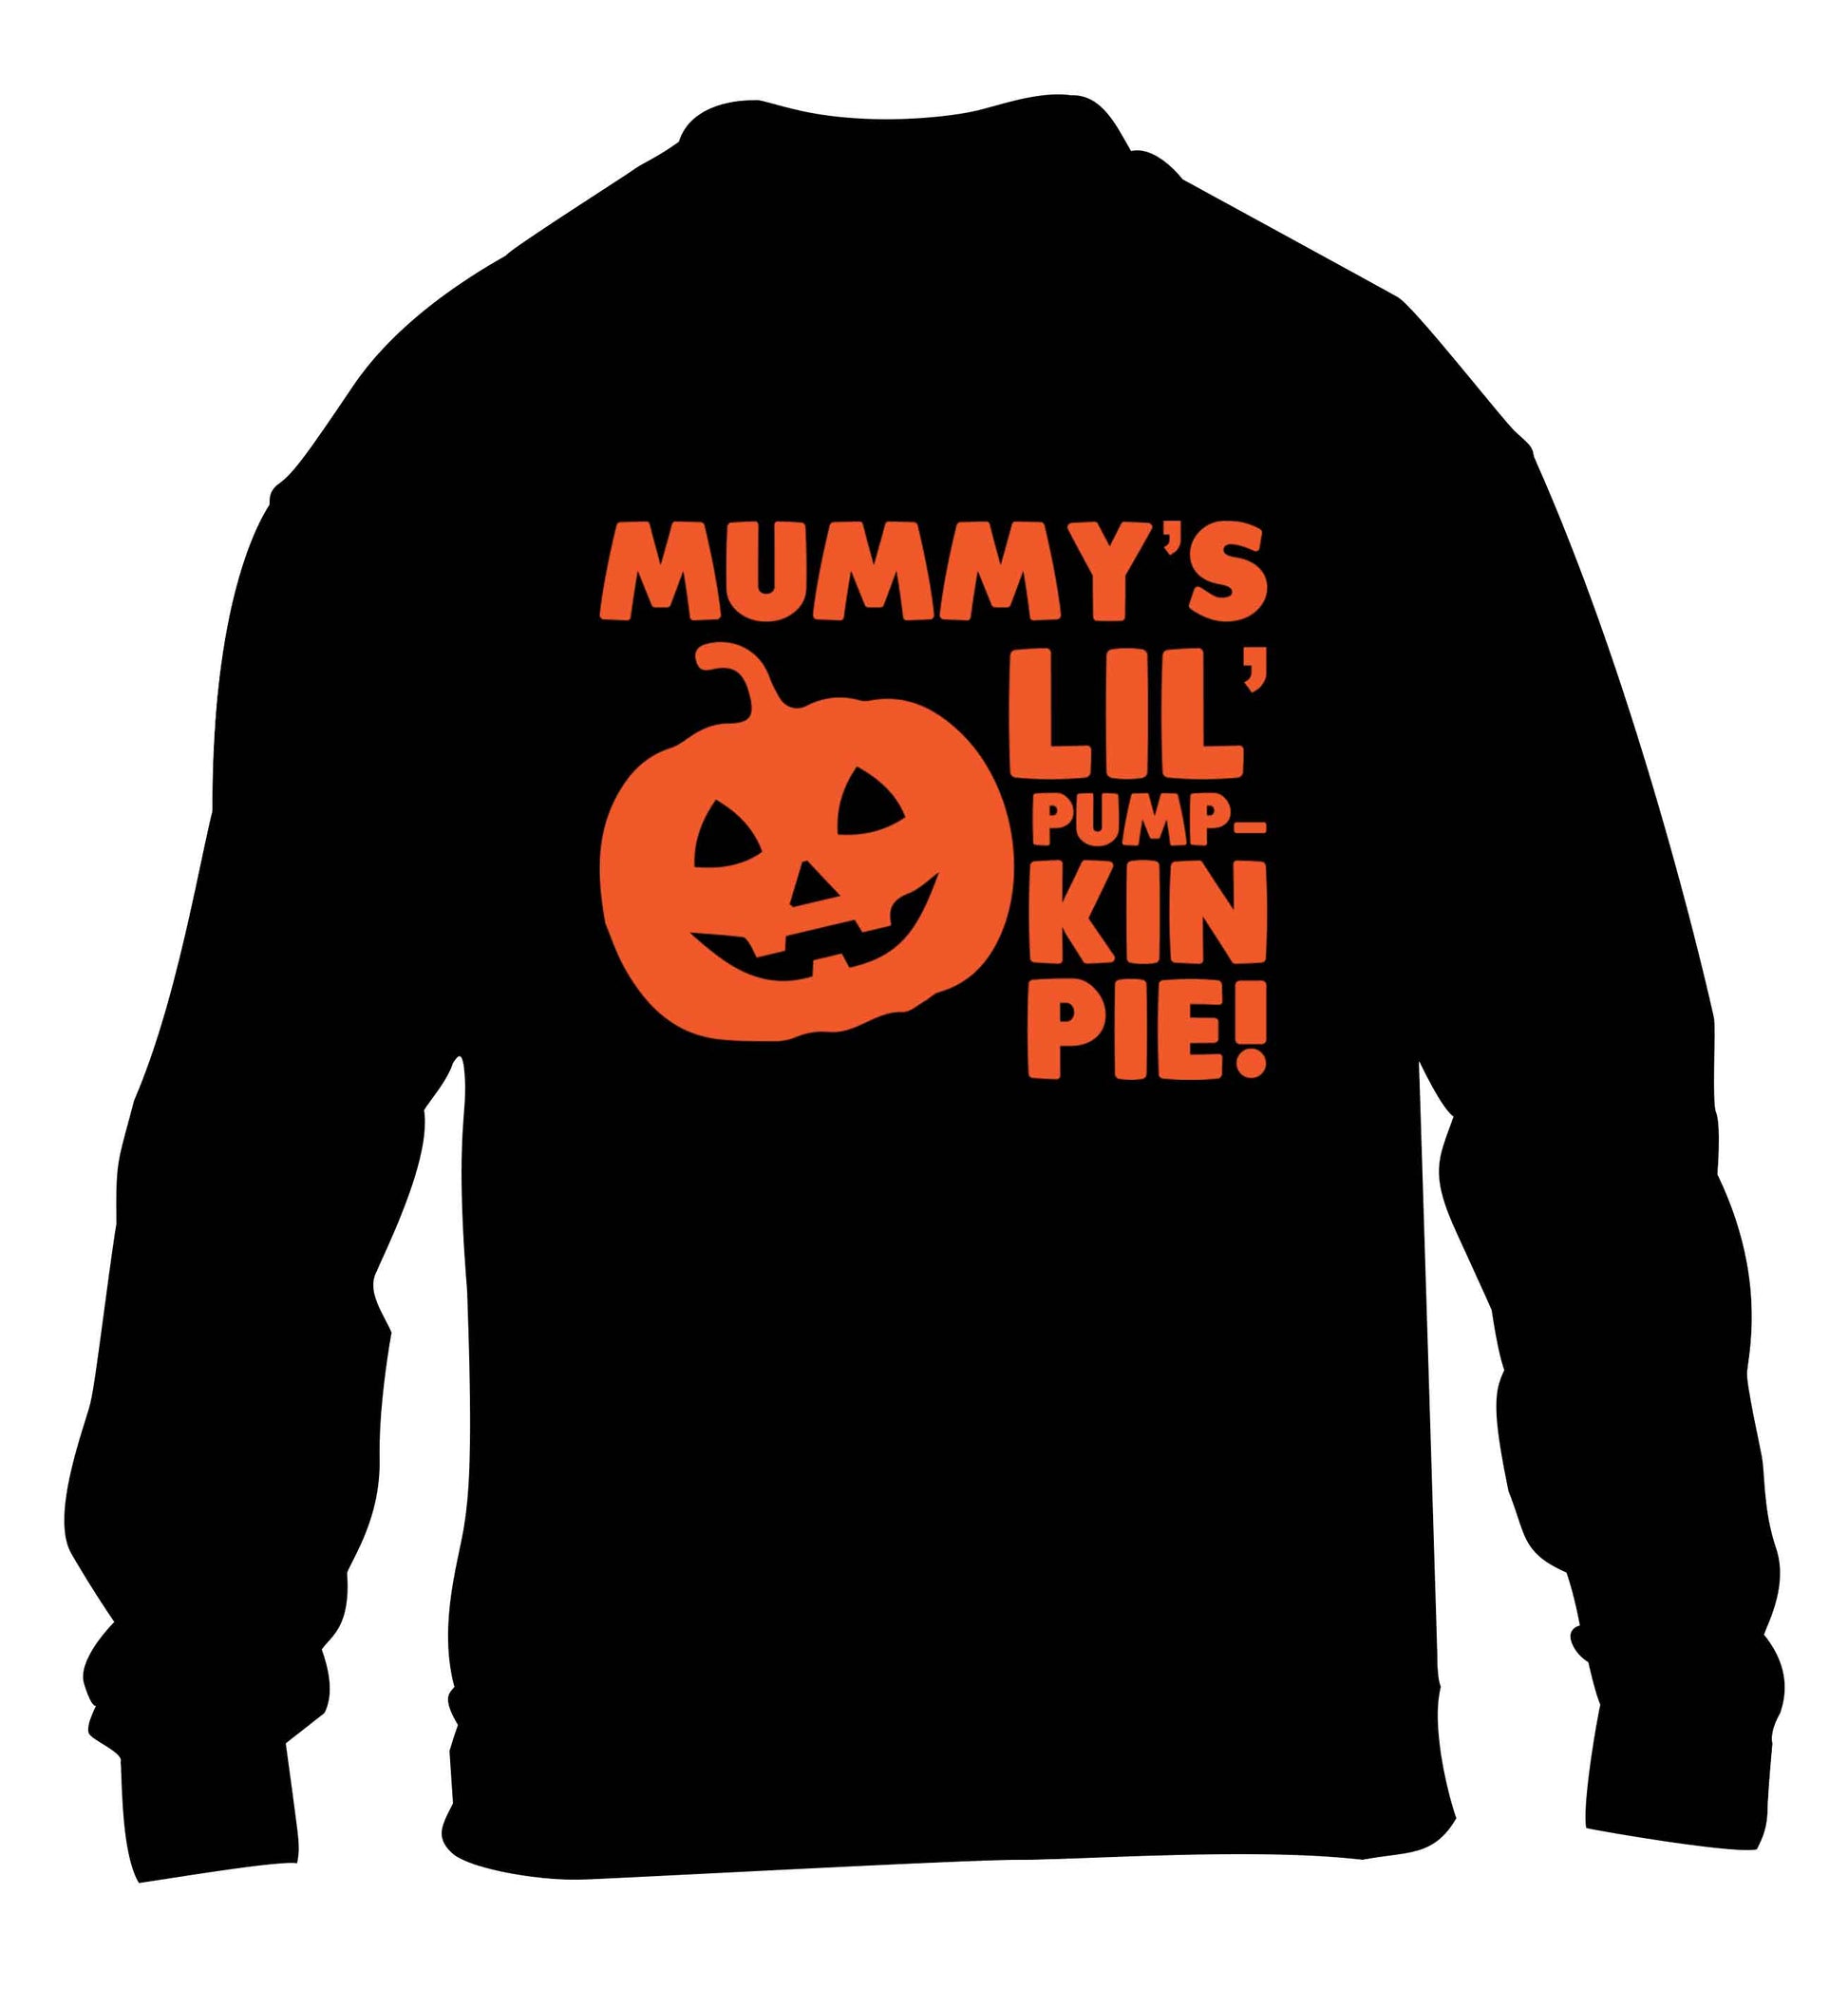 Mummy's lil' pumpkin pie children's black sweater 12-13 Years